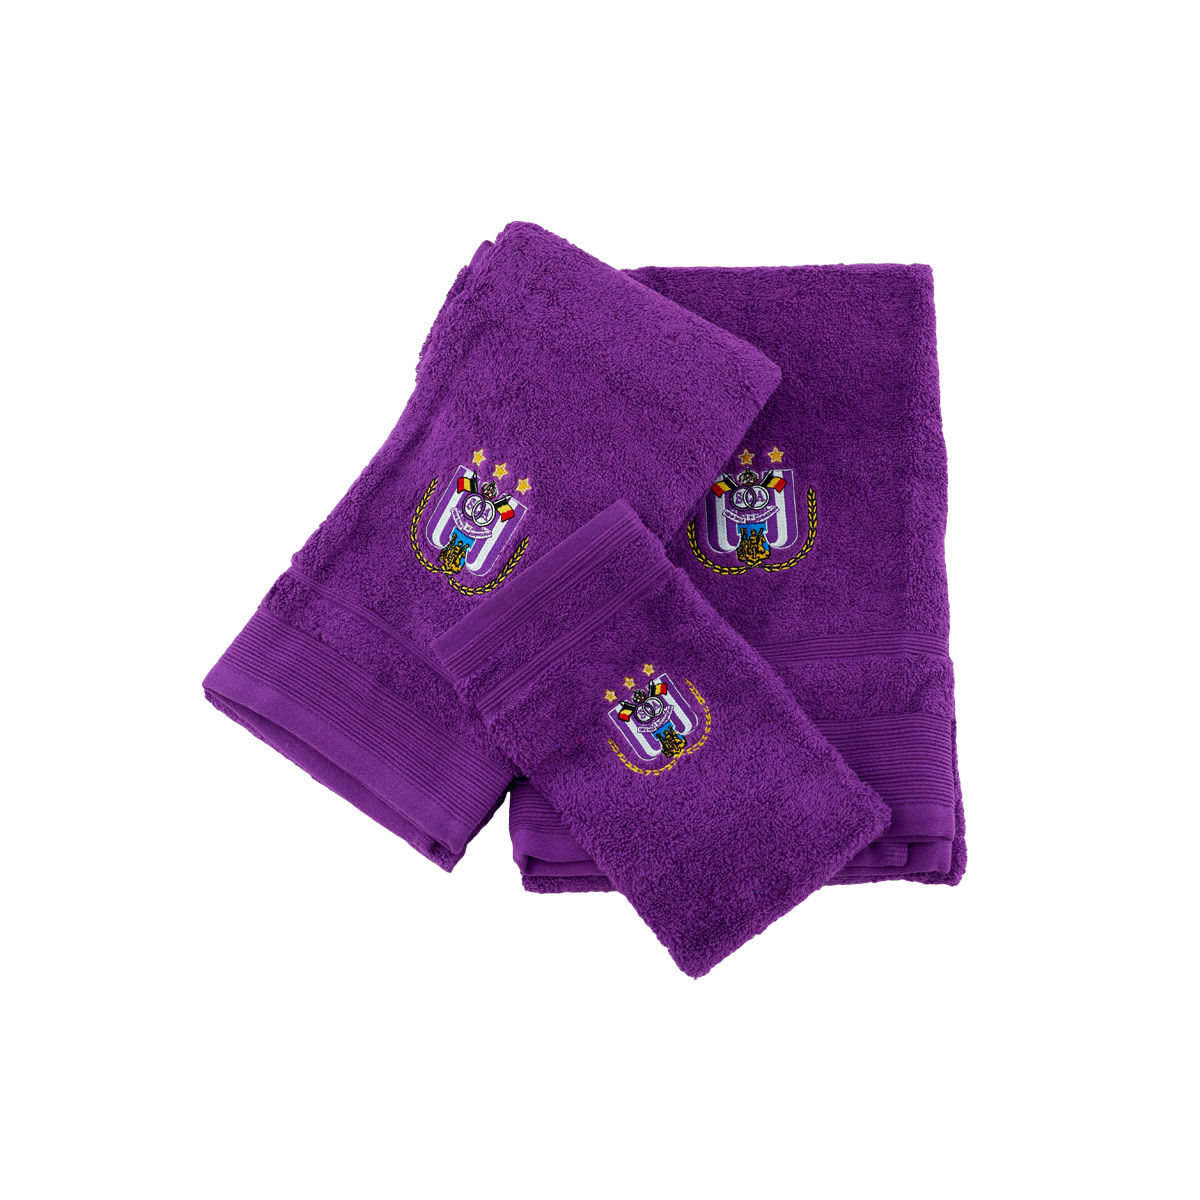 Towel Set - Purple